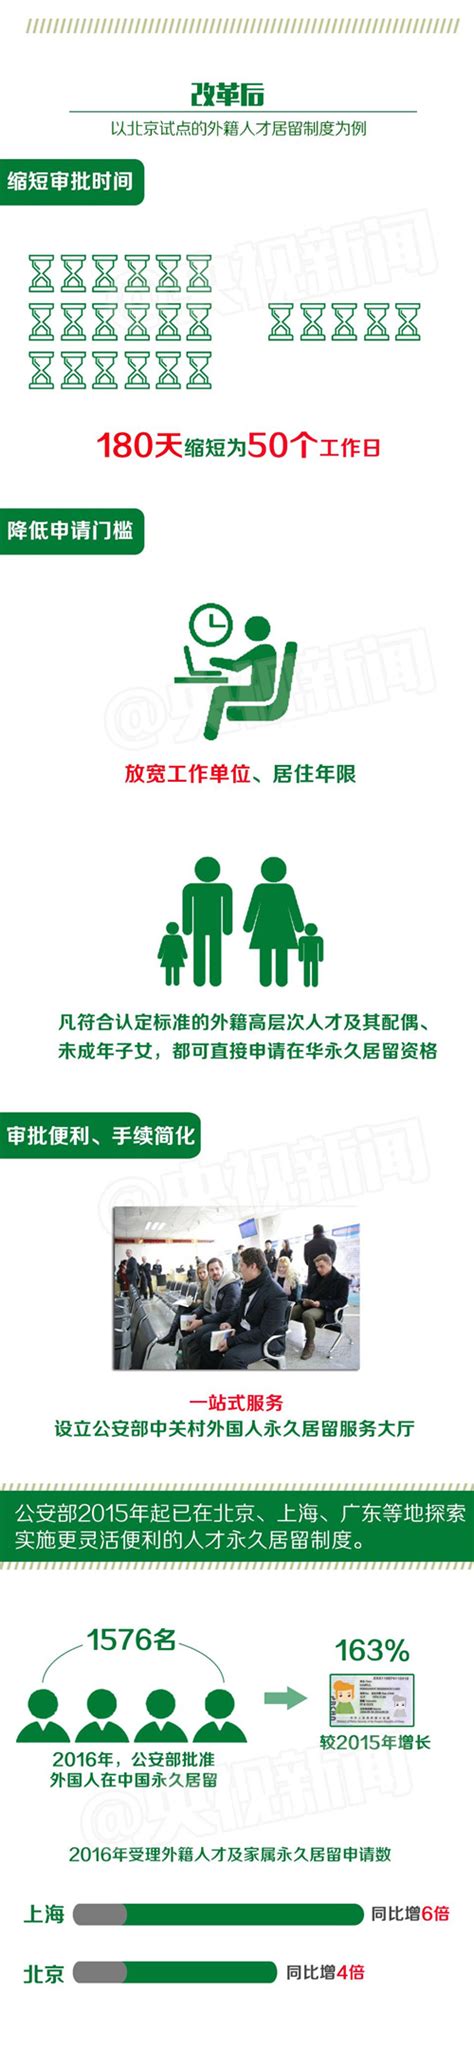 热点解读_（图解）《广州市花都区人才绿卡暂行实施办法》政策解读